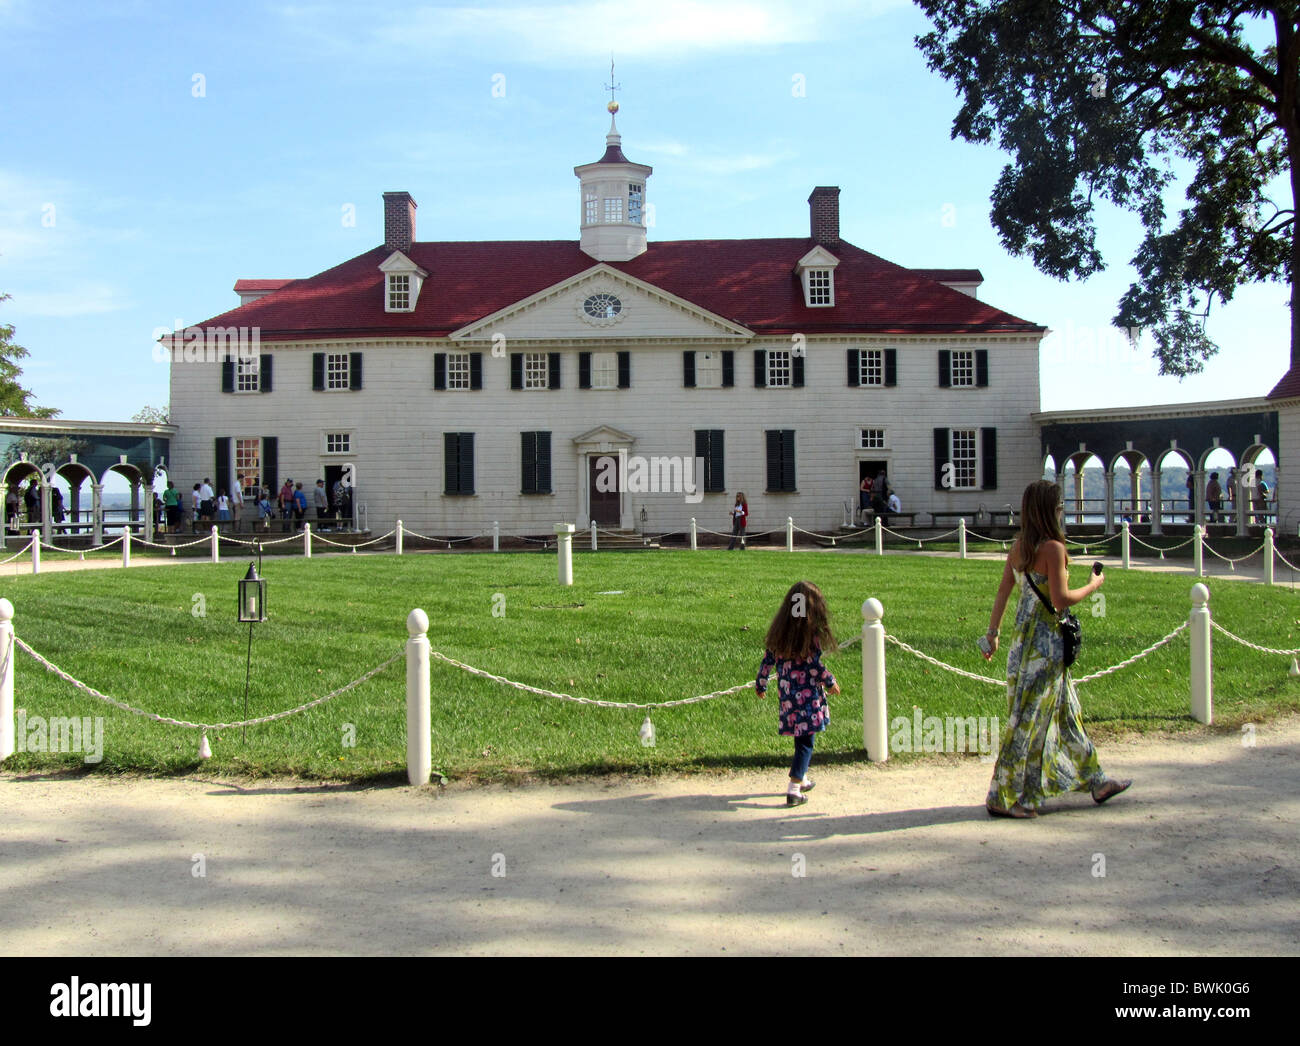 Plantación de Mount Vernon, el hogar de George Washington, el primer Presidente de los Estados Unidos, Virginia, Estados Unidos Foto de stock